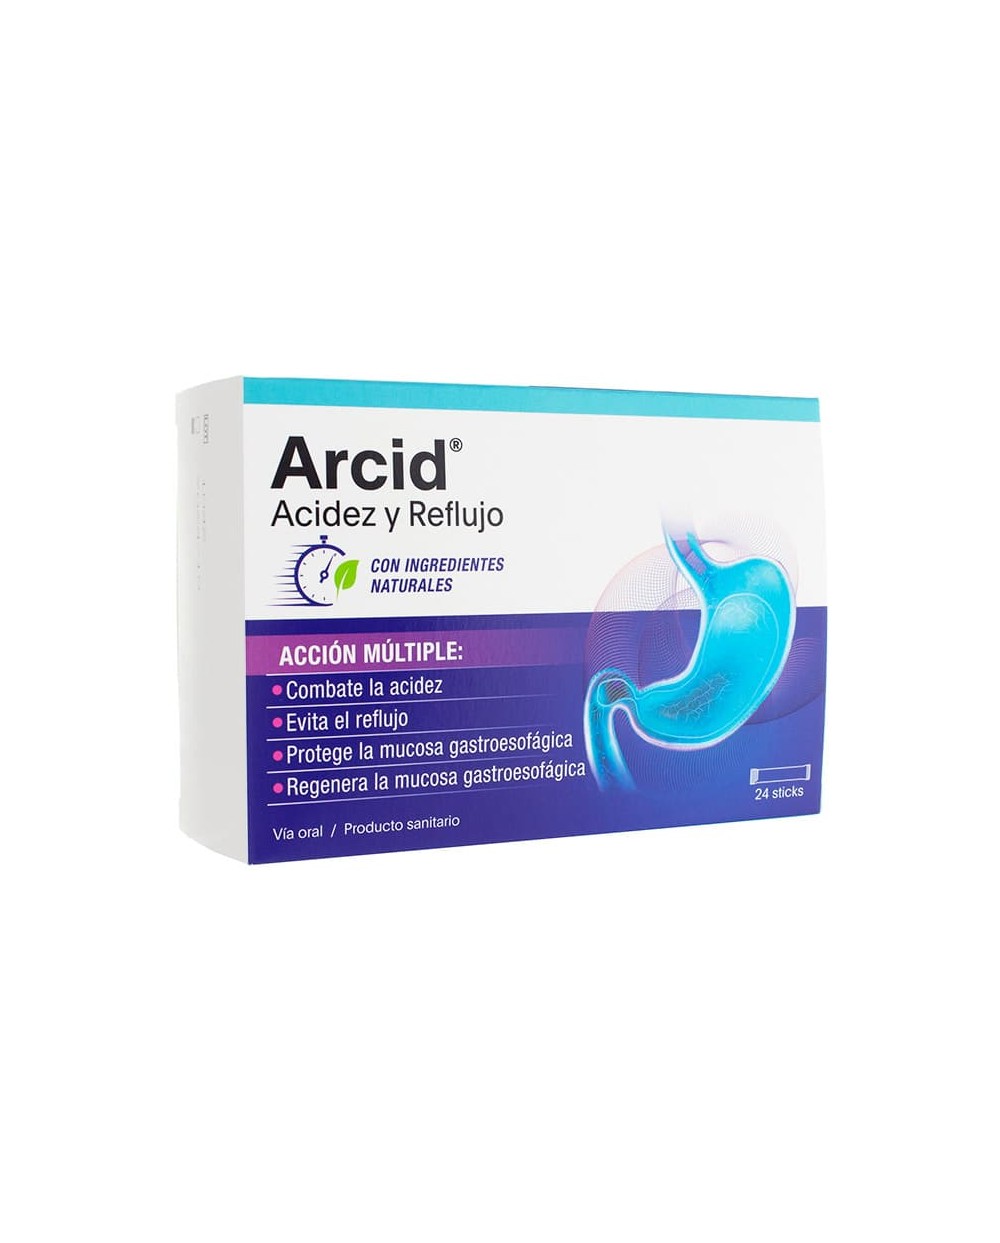 Arcid Acidez y Reflujo, 24 Sticks